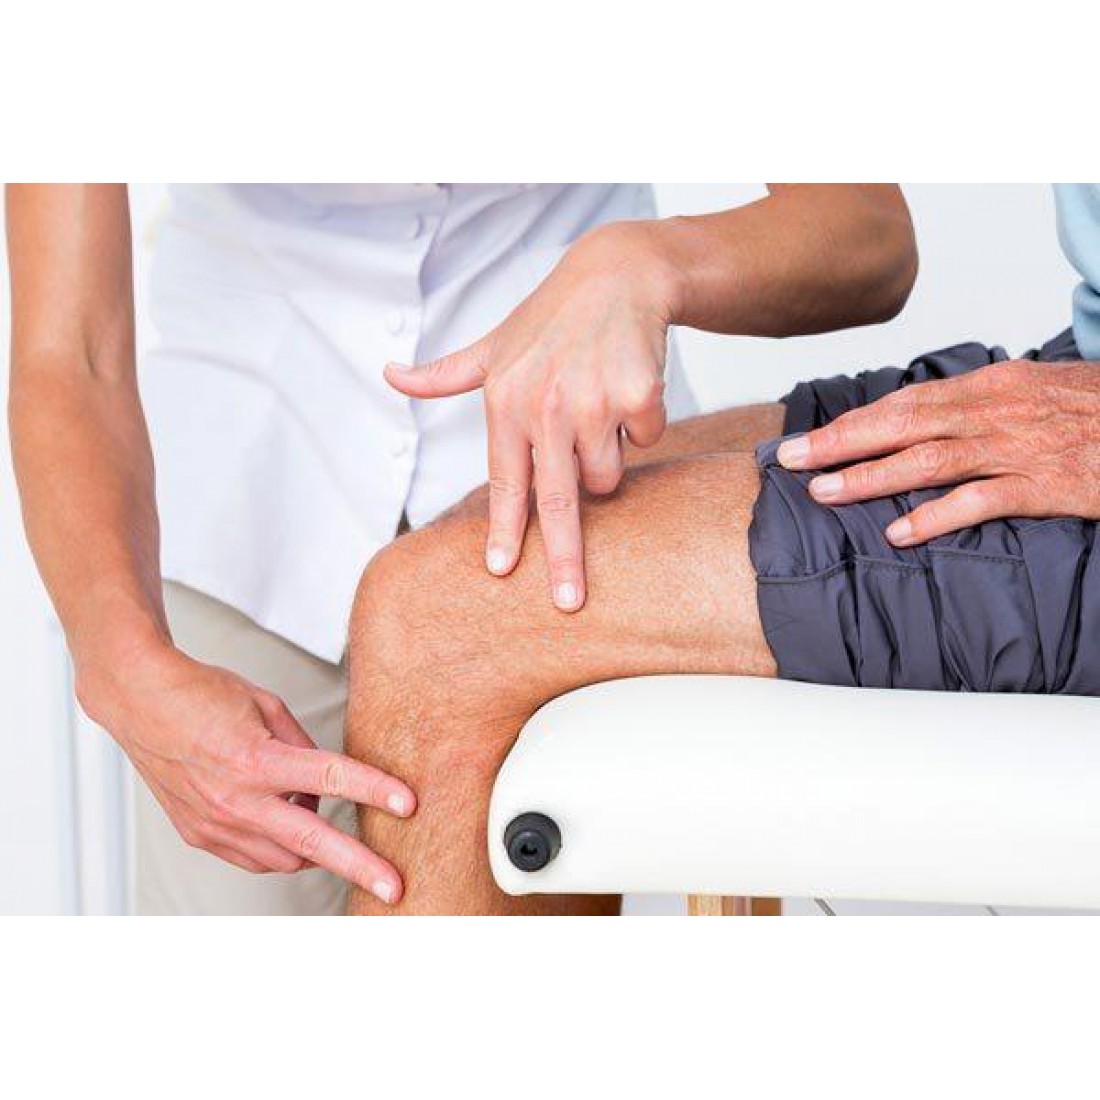 Гонартроз коленного сустава лечение препараты